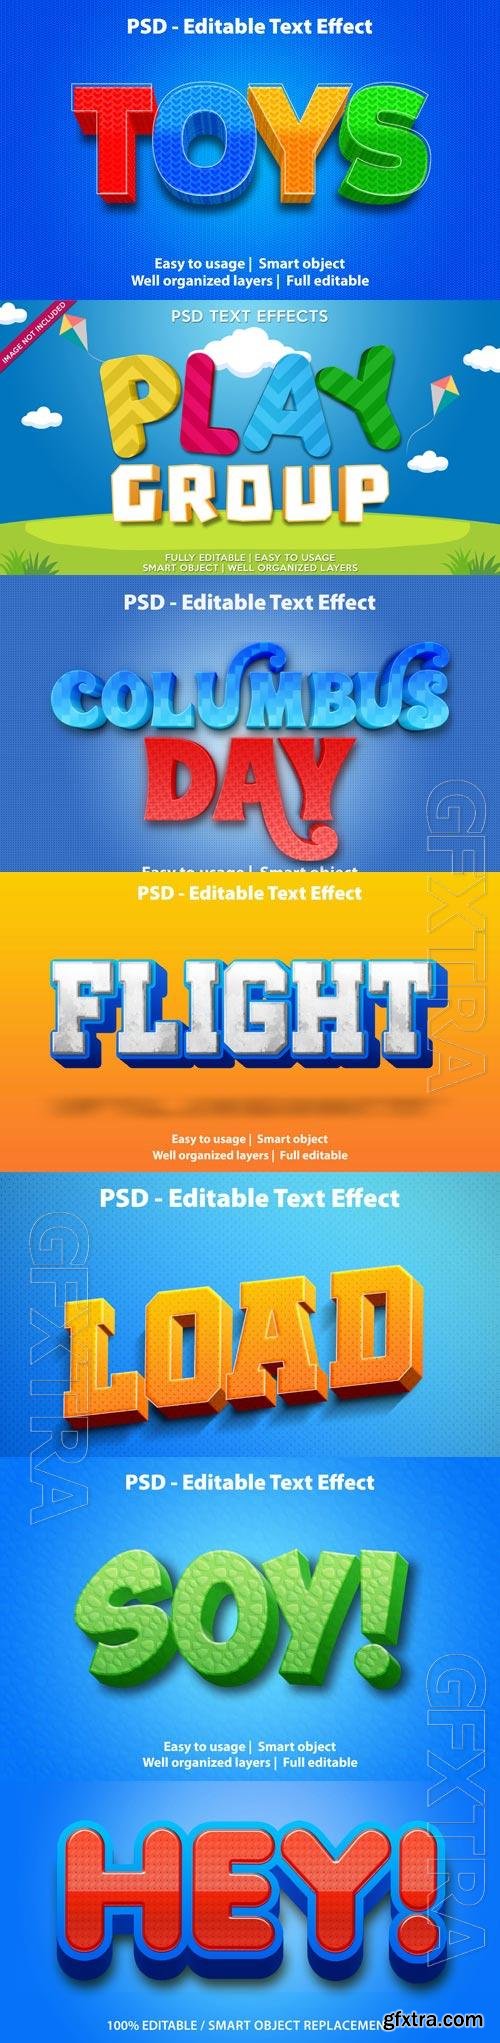 Psd text effect set vol 30